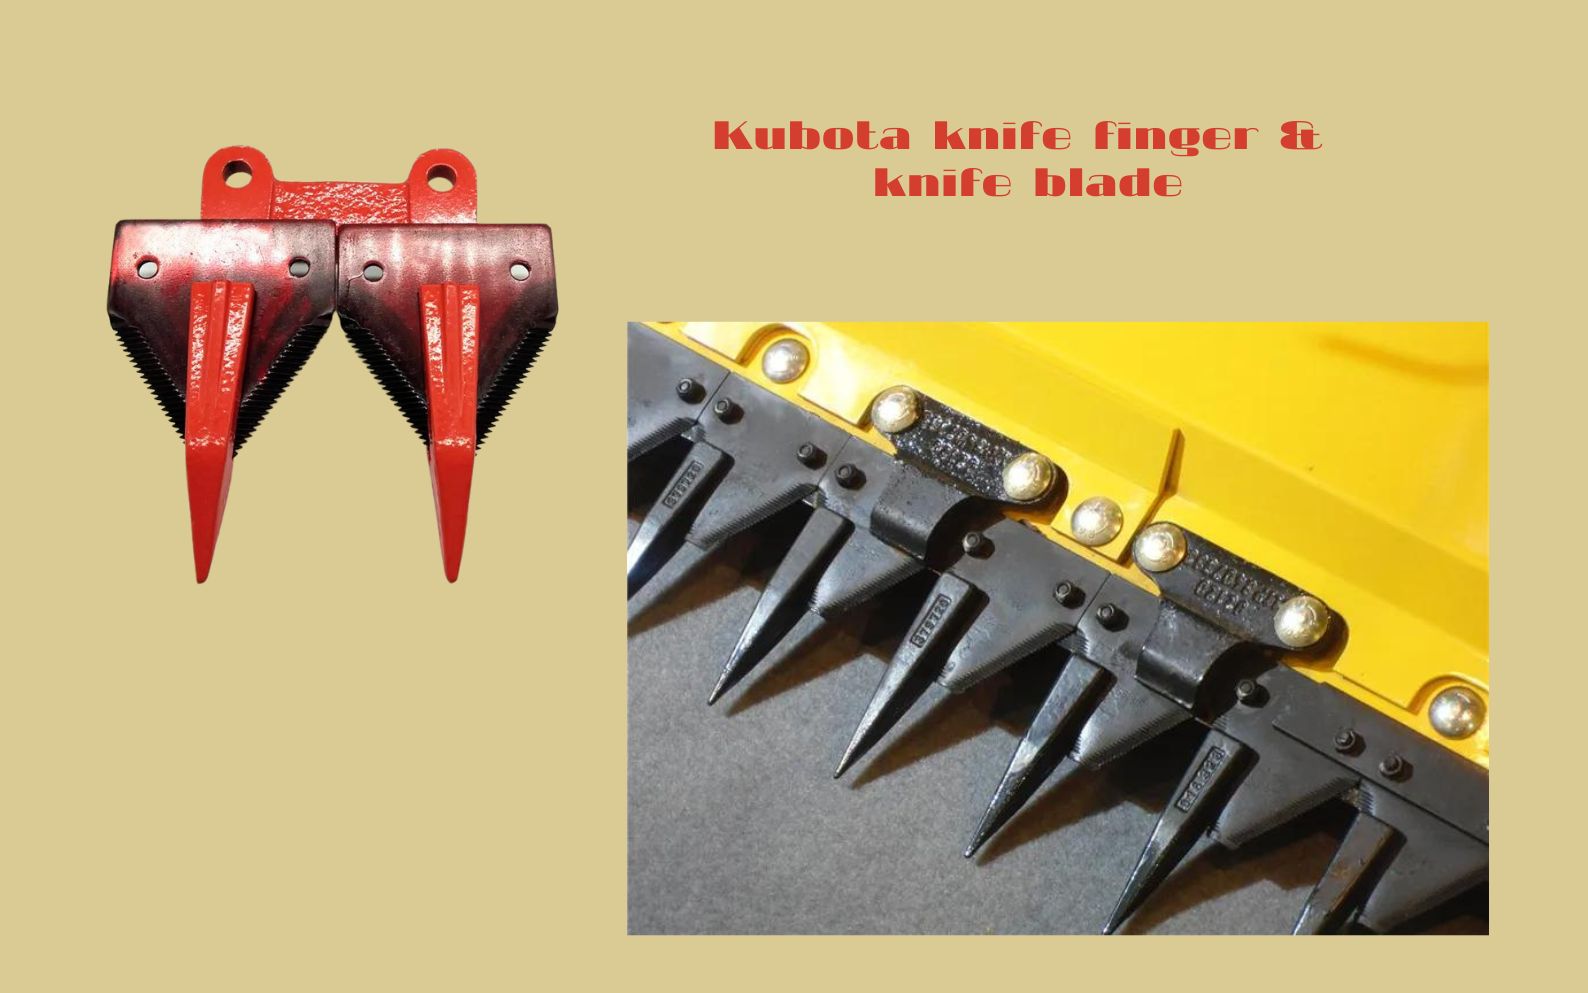 Kubota knife finger & knife blade